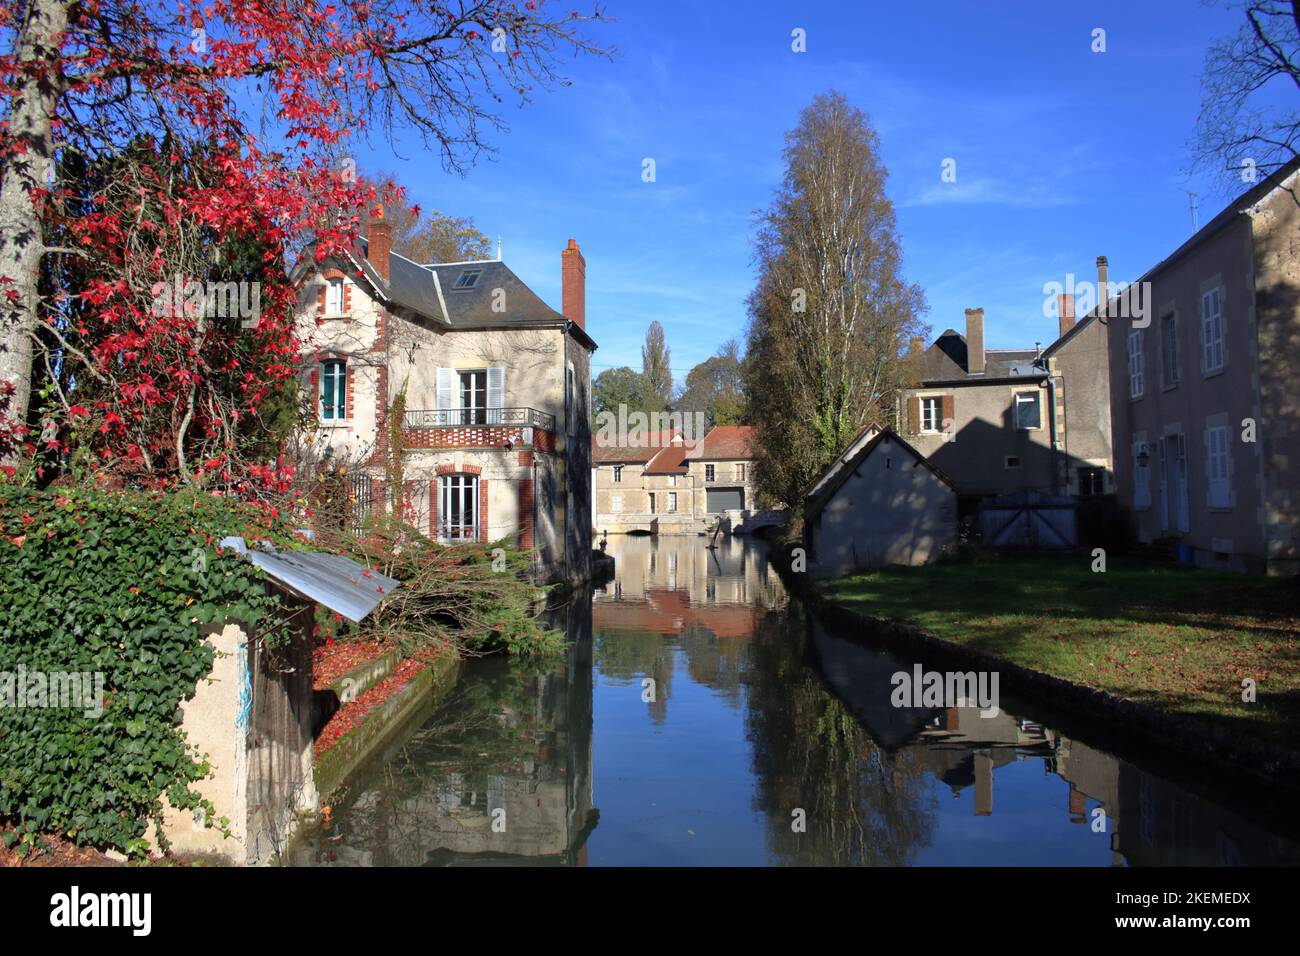 Vue d'automne de la Maison Moulin et de la rivière Nohain au centre du village de Donzy situé dans la Nièvre en France. Banque D'Images